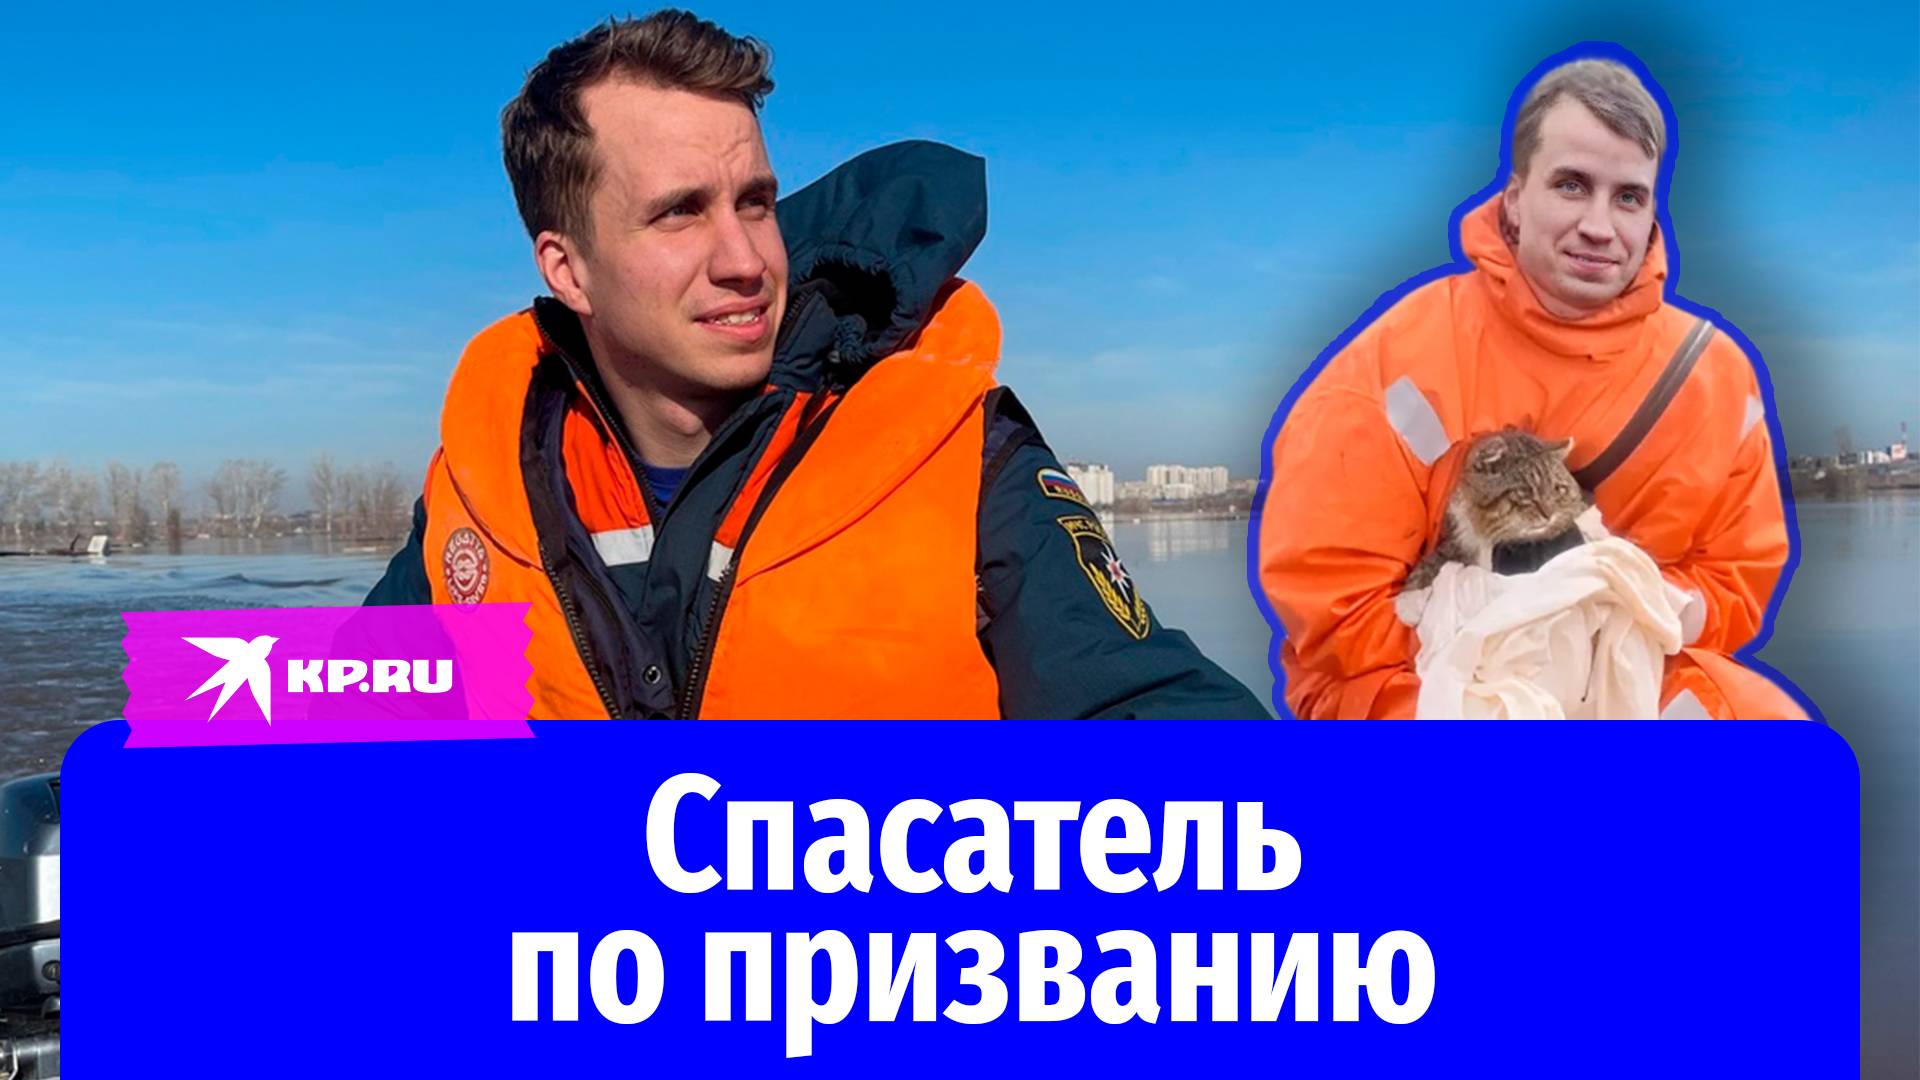 Пожарный из Кирова стал донором костного мозга для ребёнка